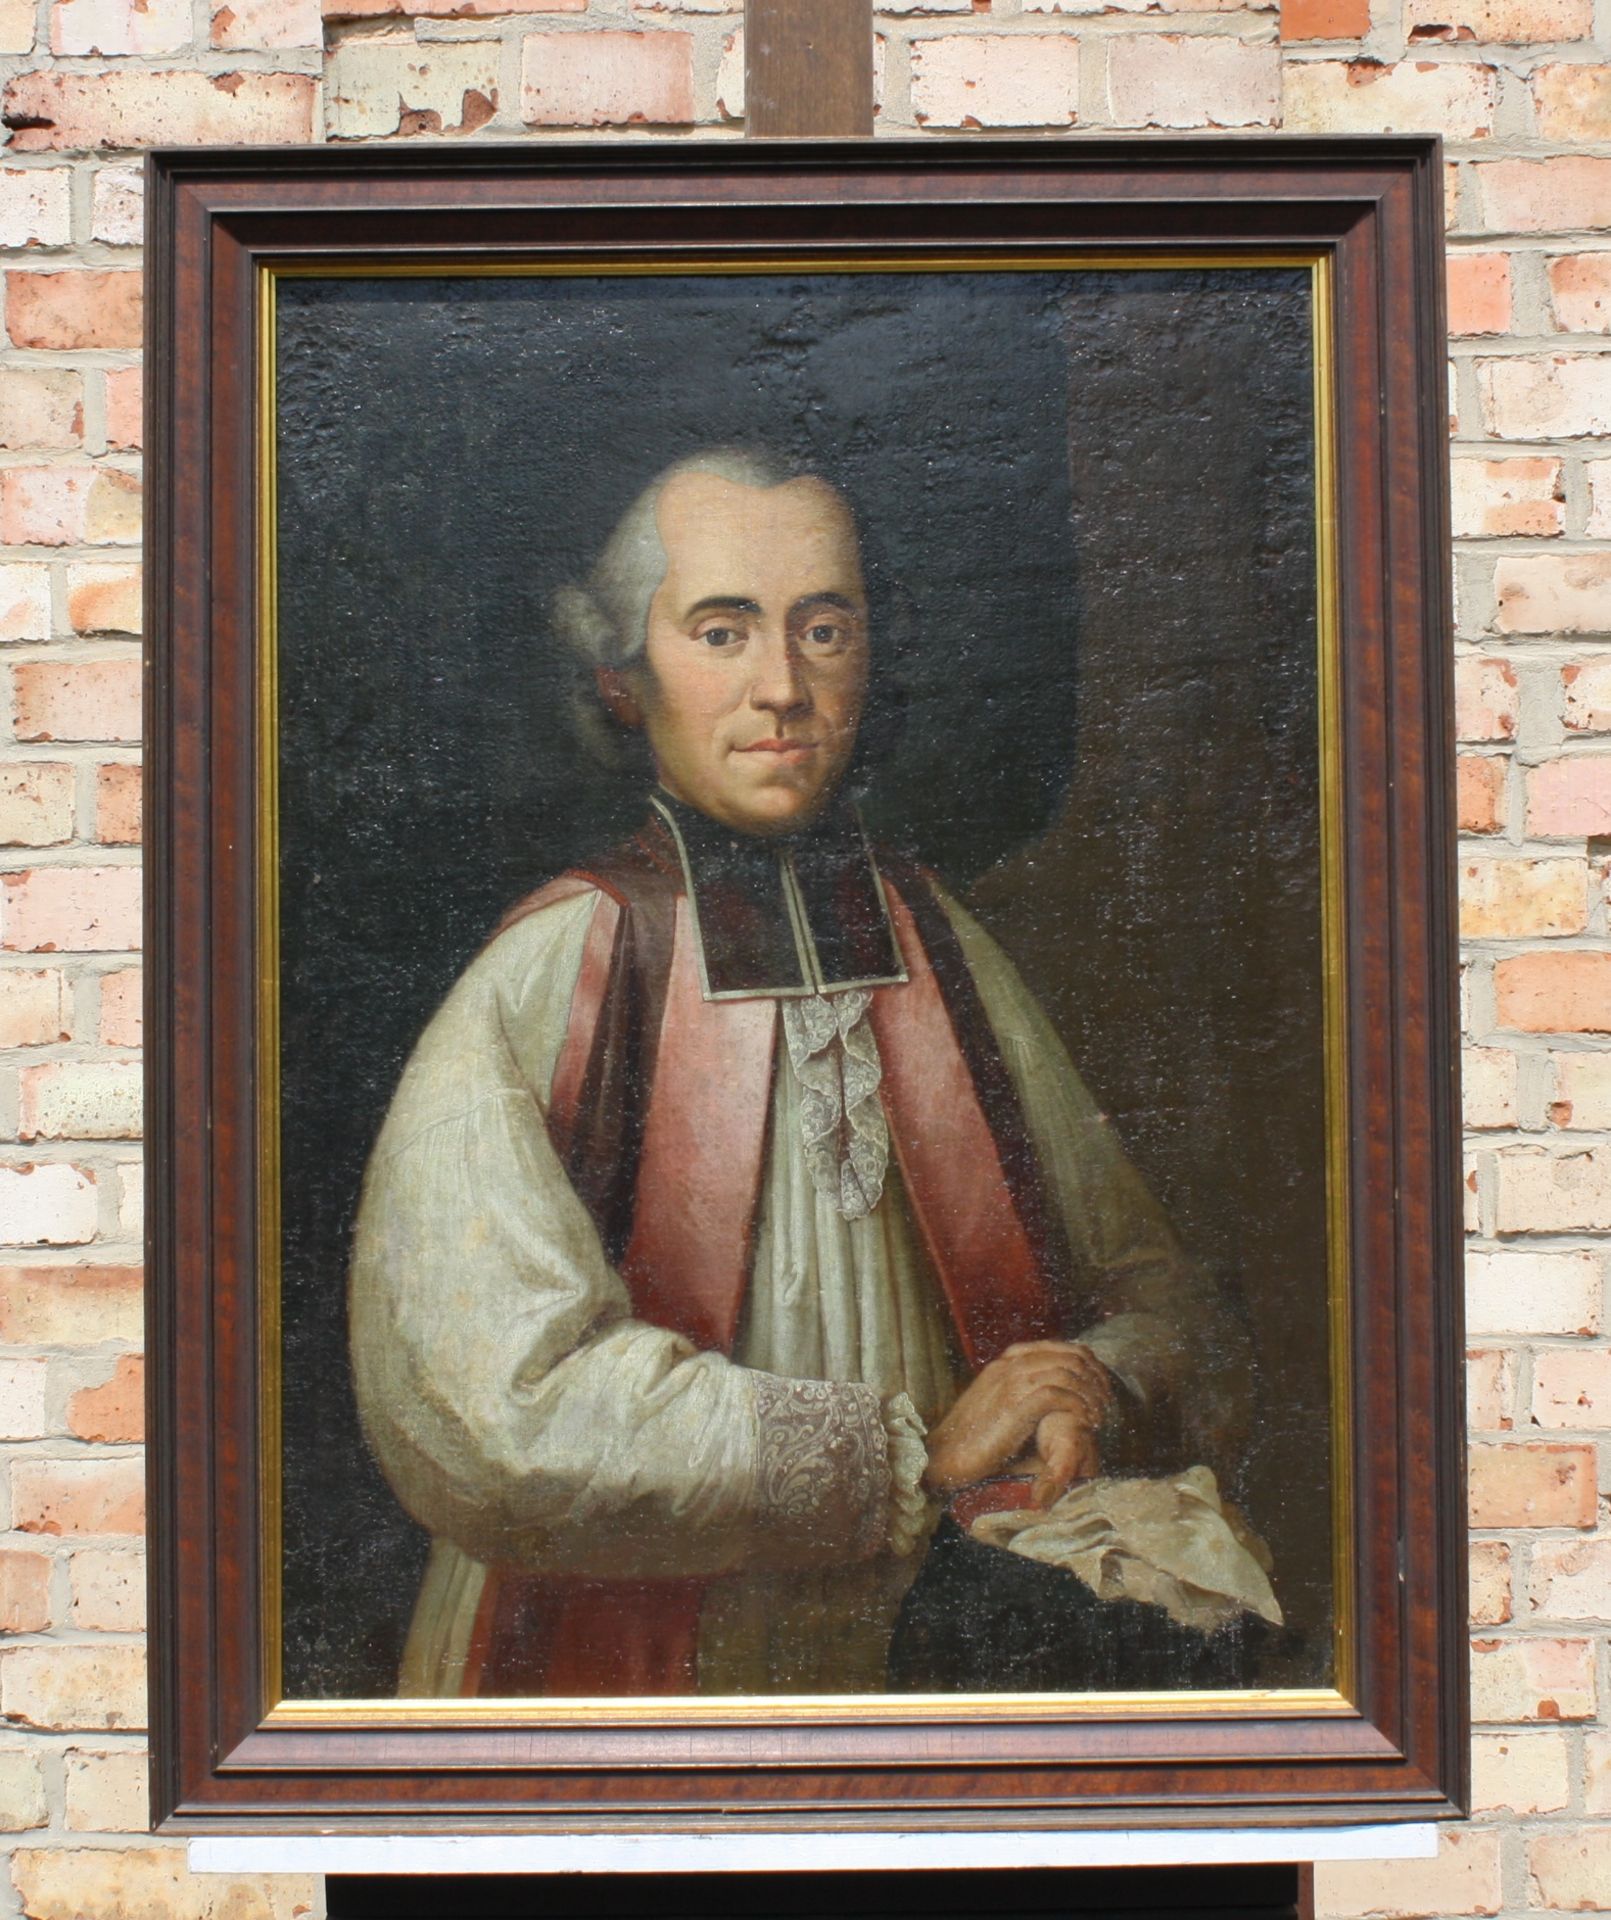 Porträt eines Geistlichen. Unbekannter Maler, wohl 17./18. Jahrhundert